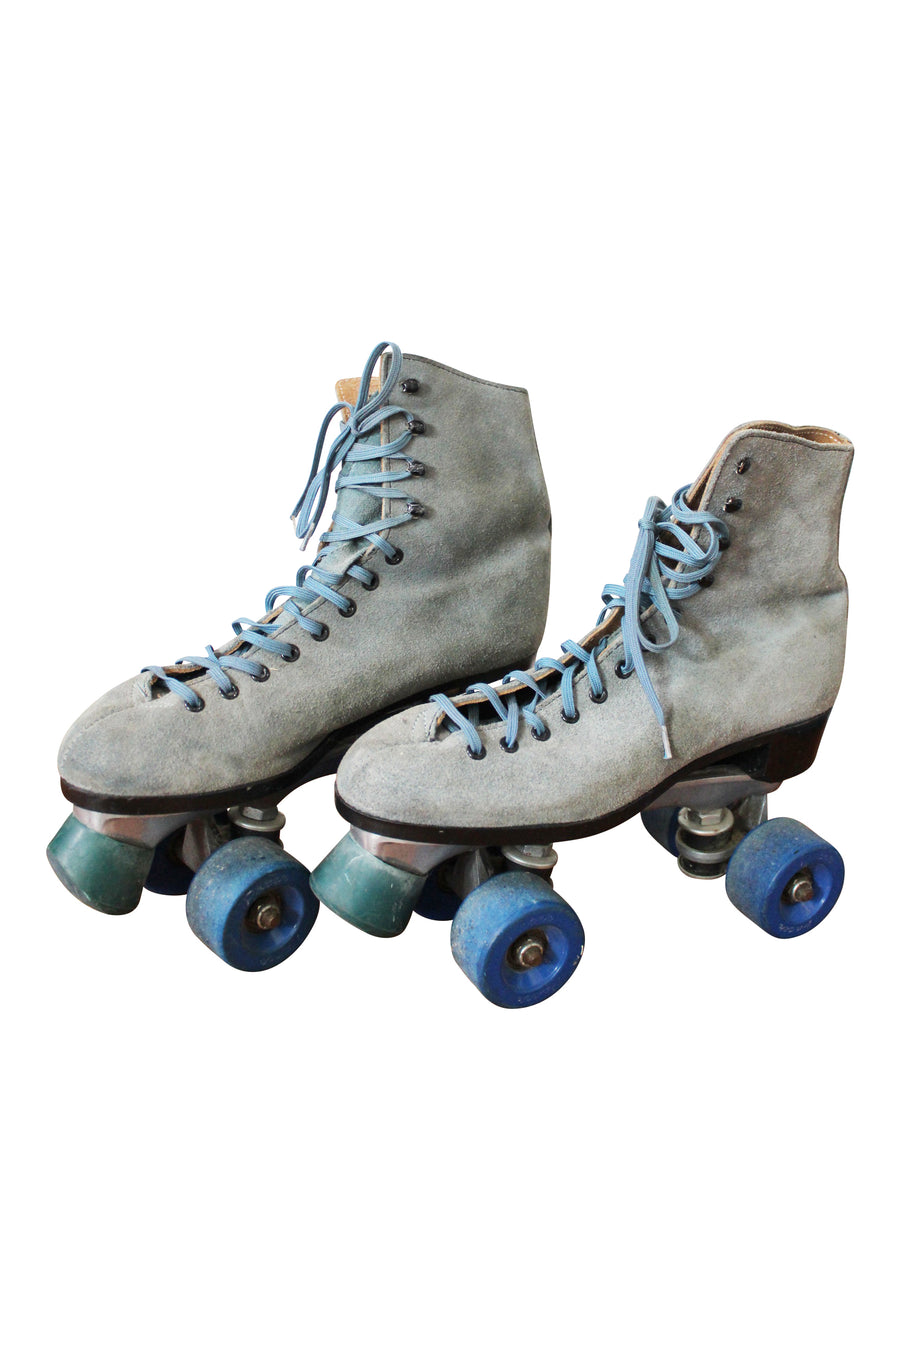 Roller Skates